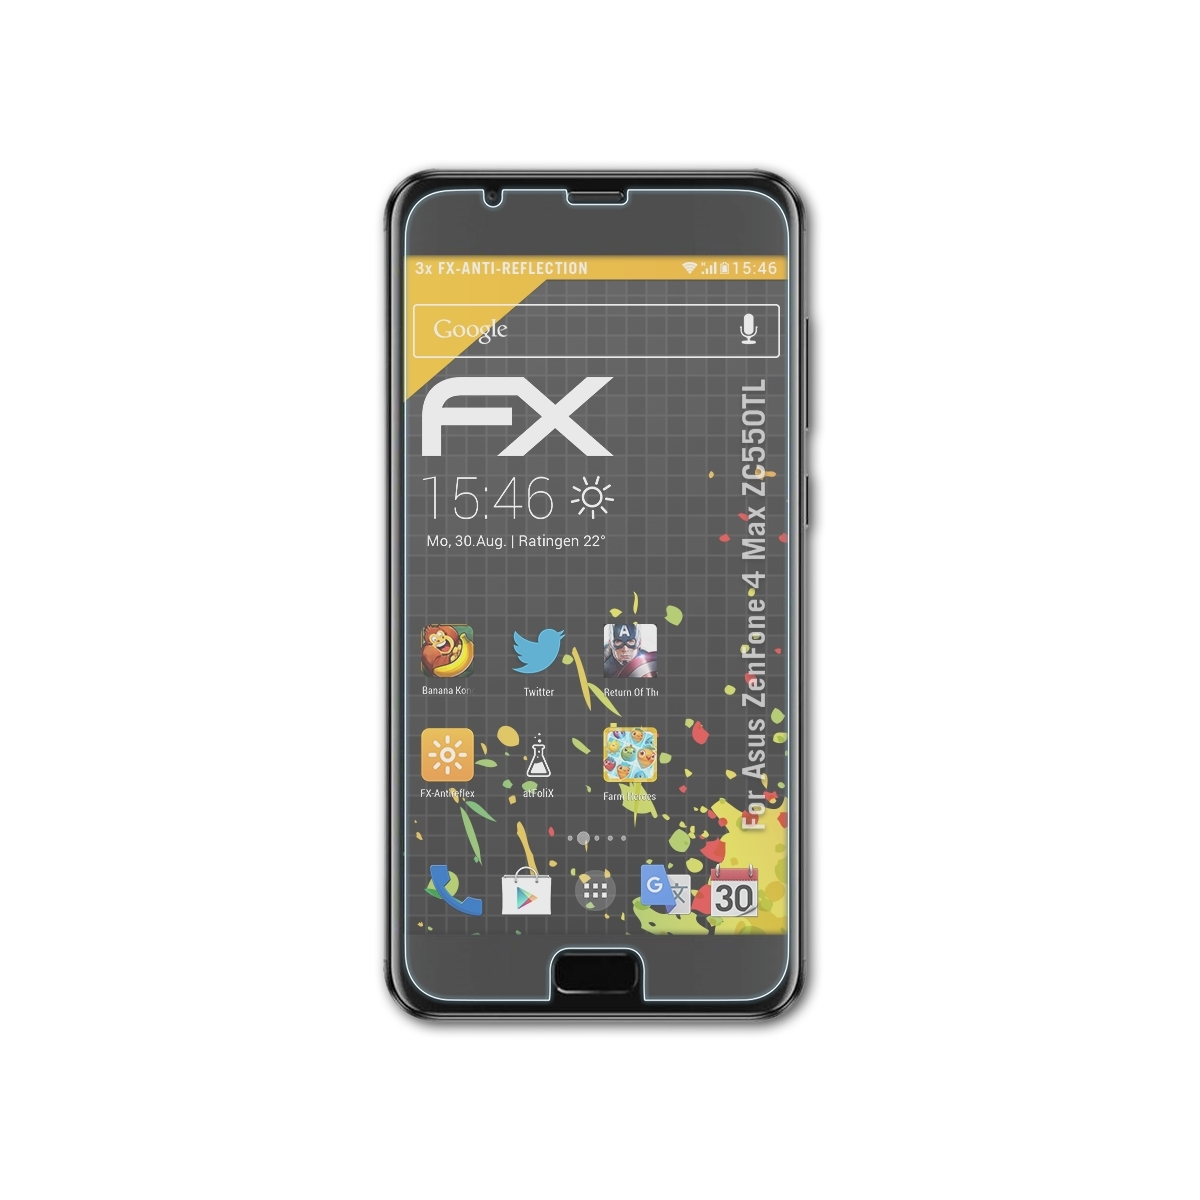 Displayschutz(für 3x 4 ZenFone (ZC550TL)) Asus FX-Antireflex Max ATFOLIX